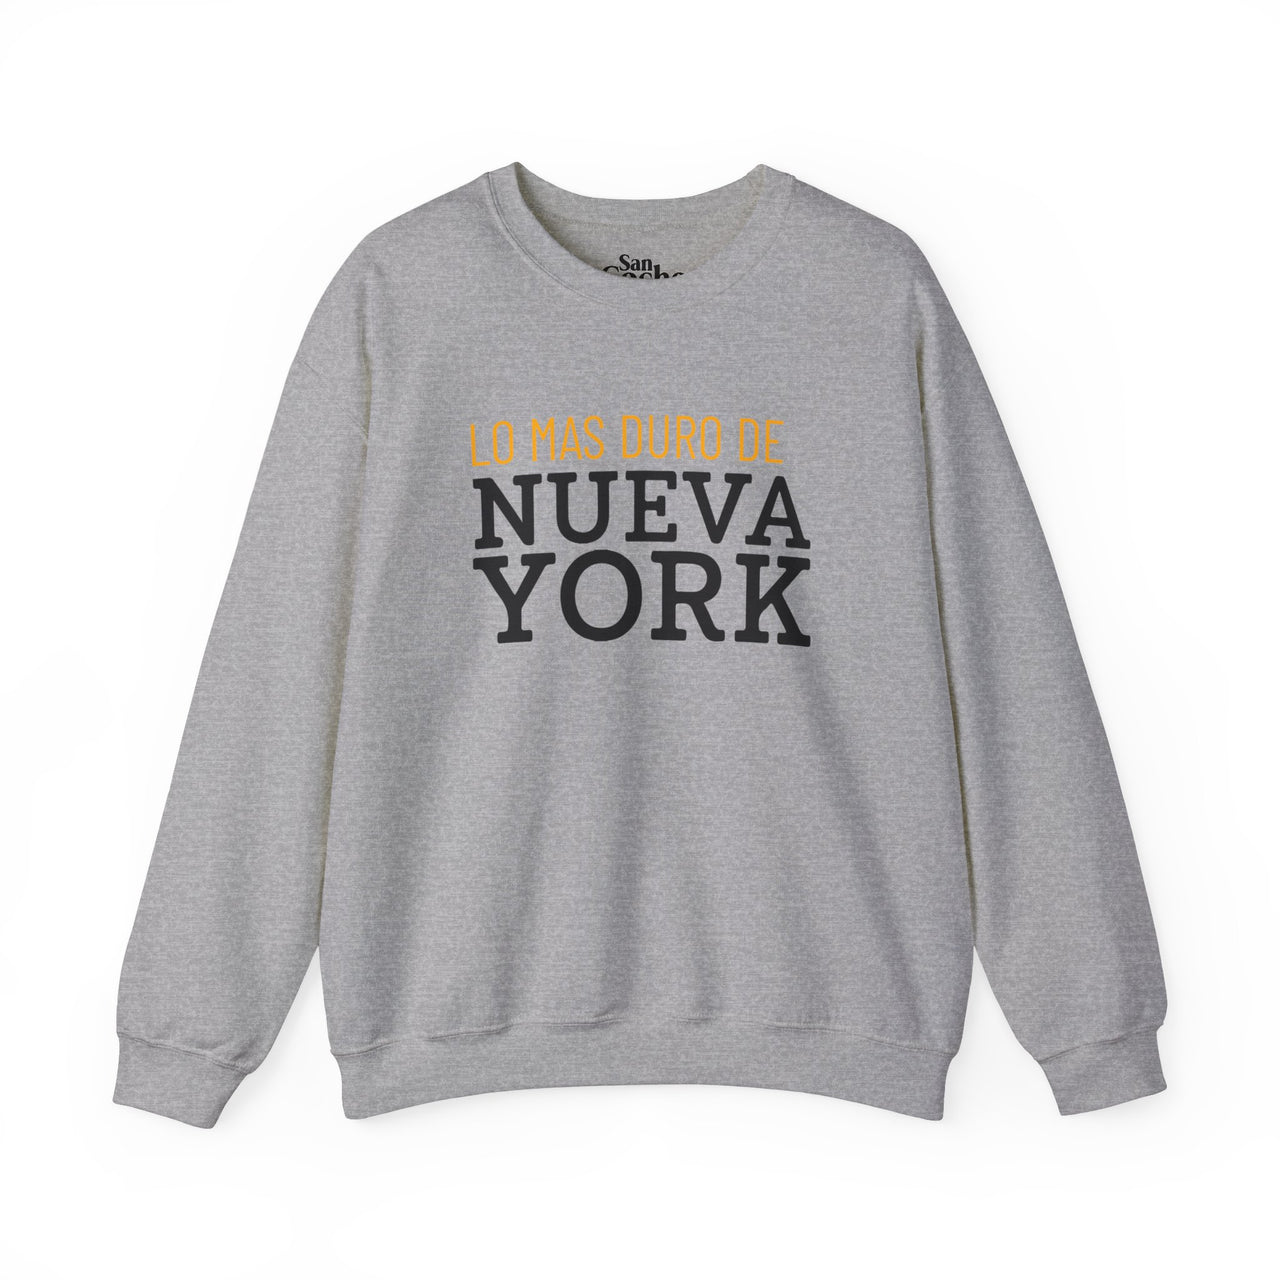 Los Mas Duro De Nueva York Oversized Sweatshirt